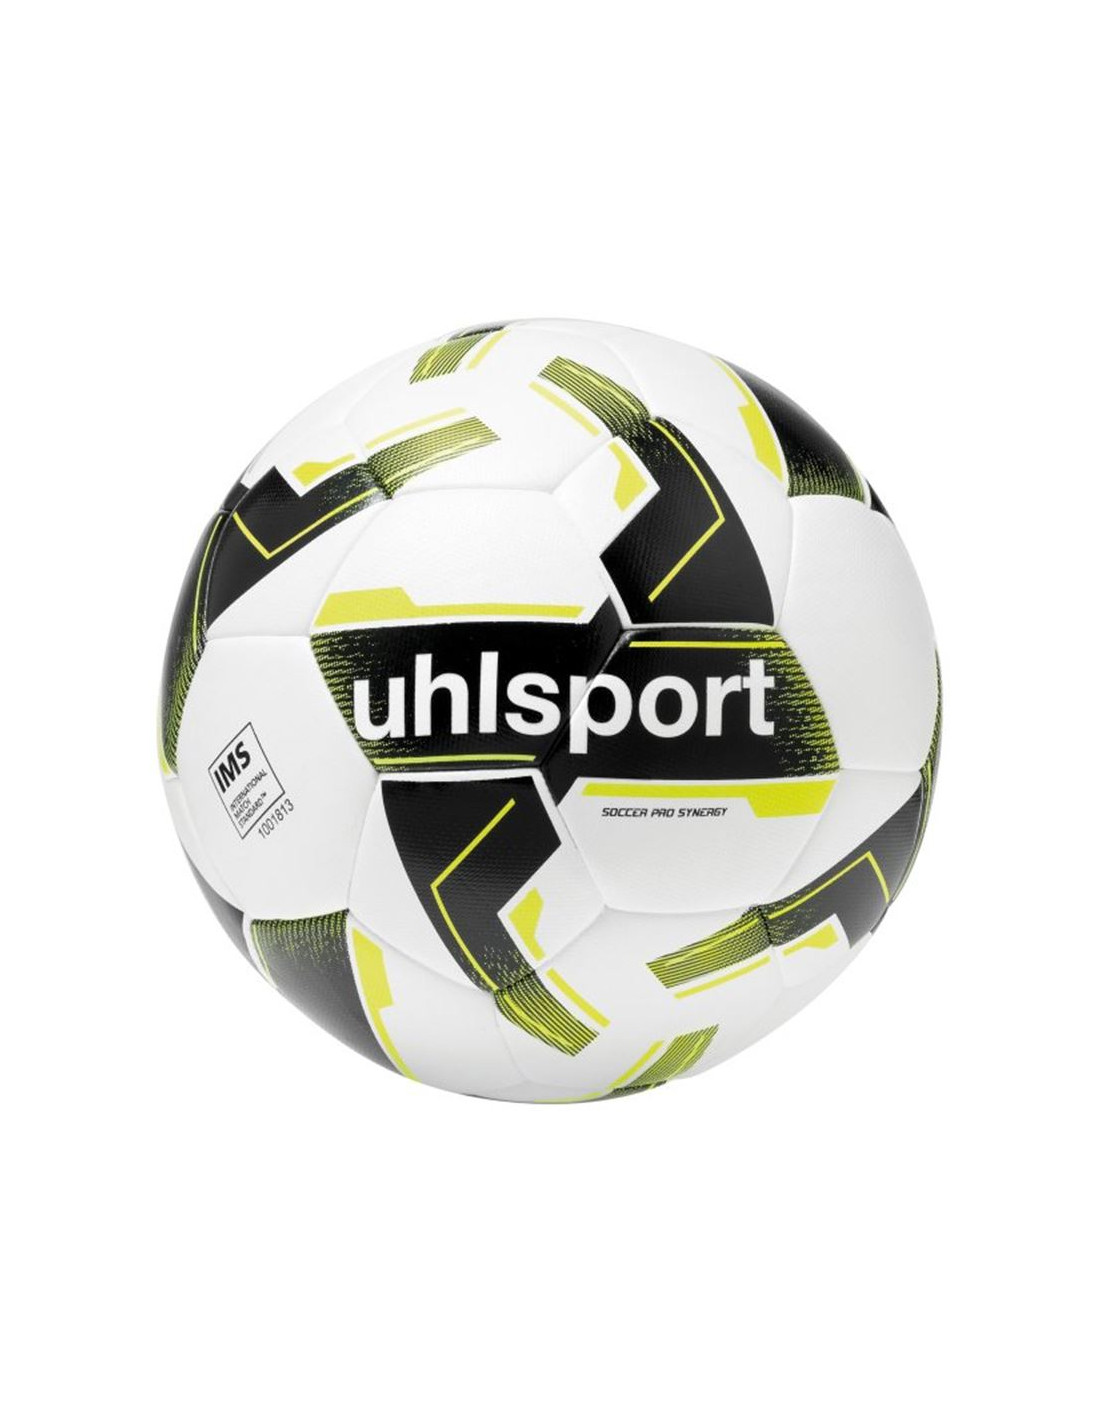 Balón de fútbol uhlsport soccer pro synergy 5 white